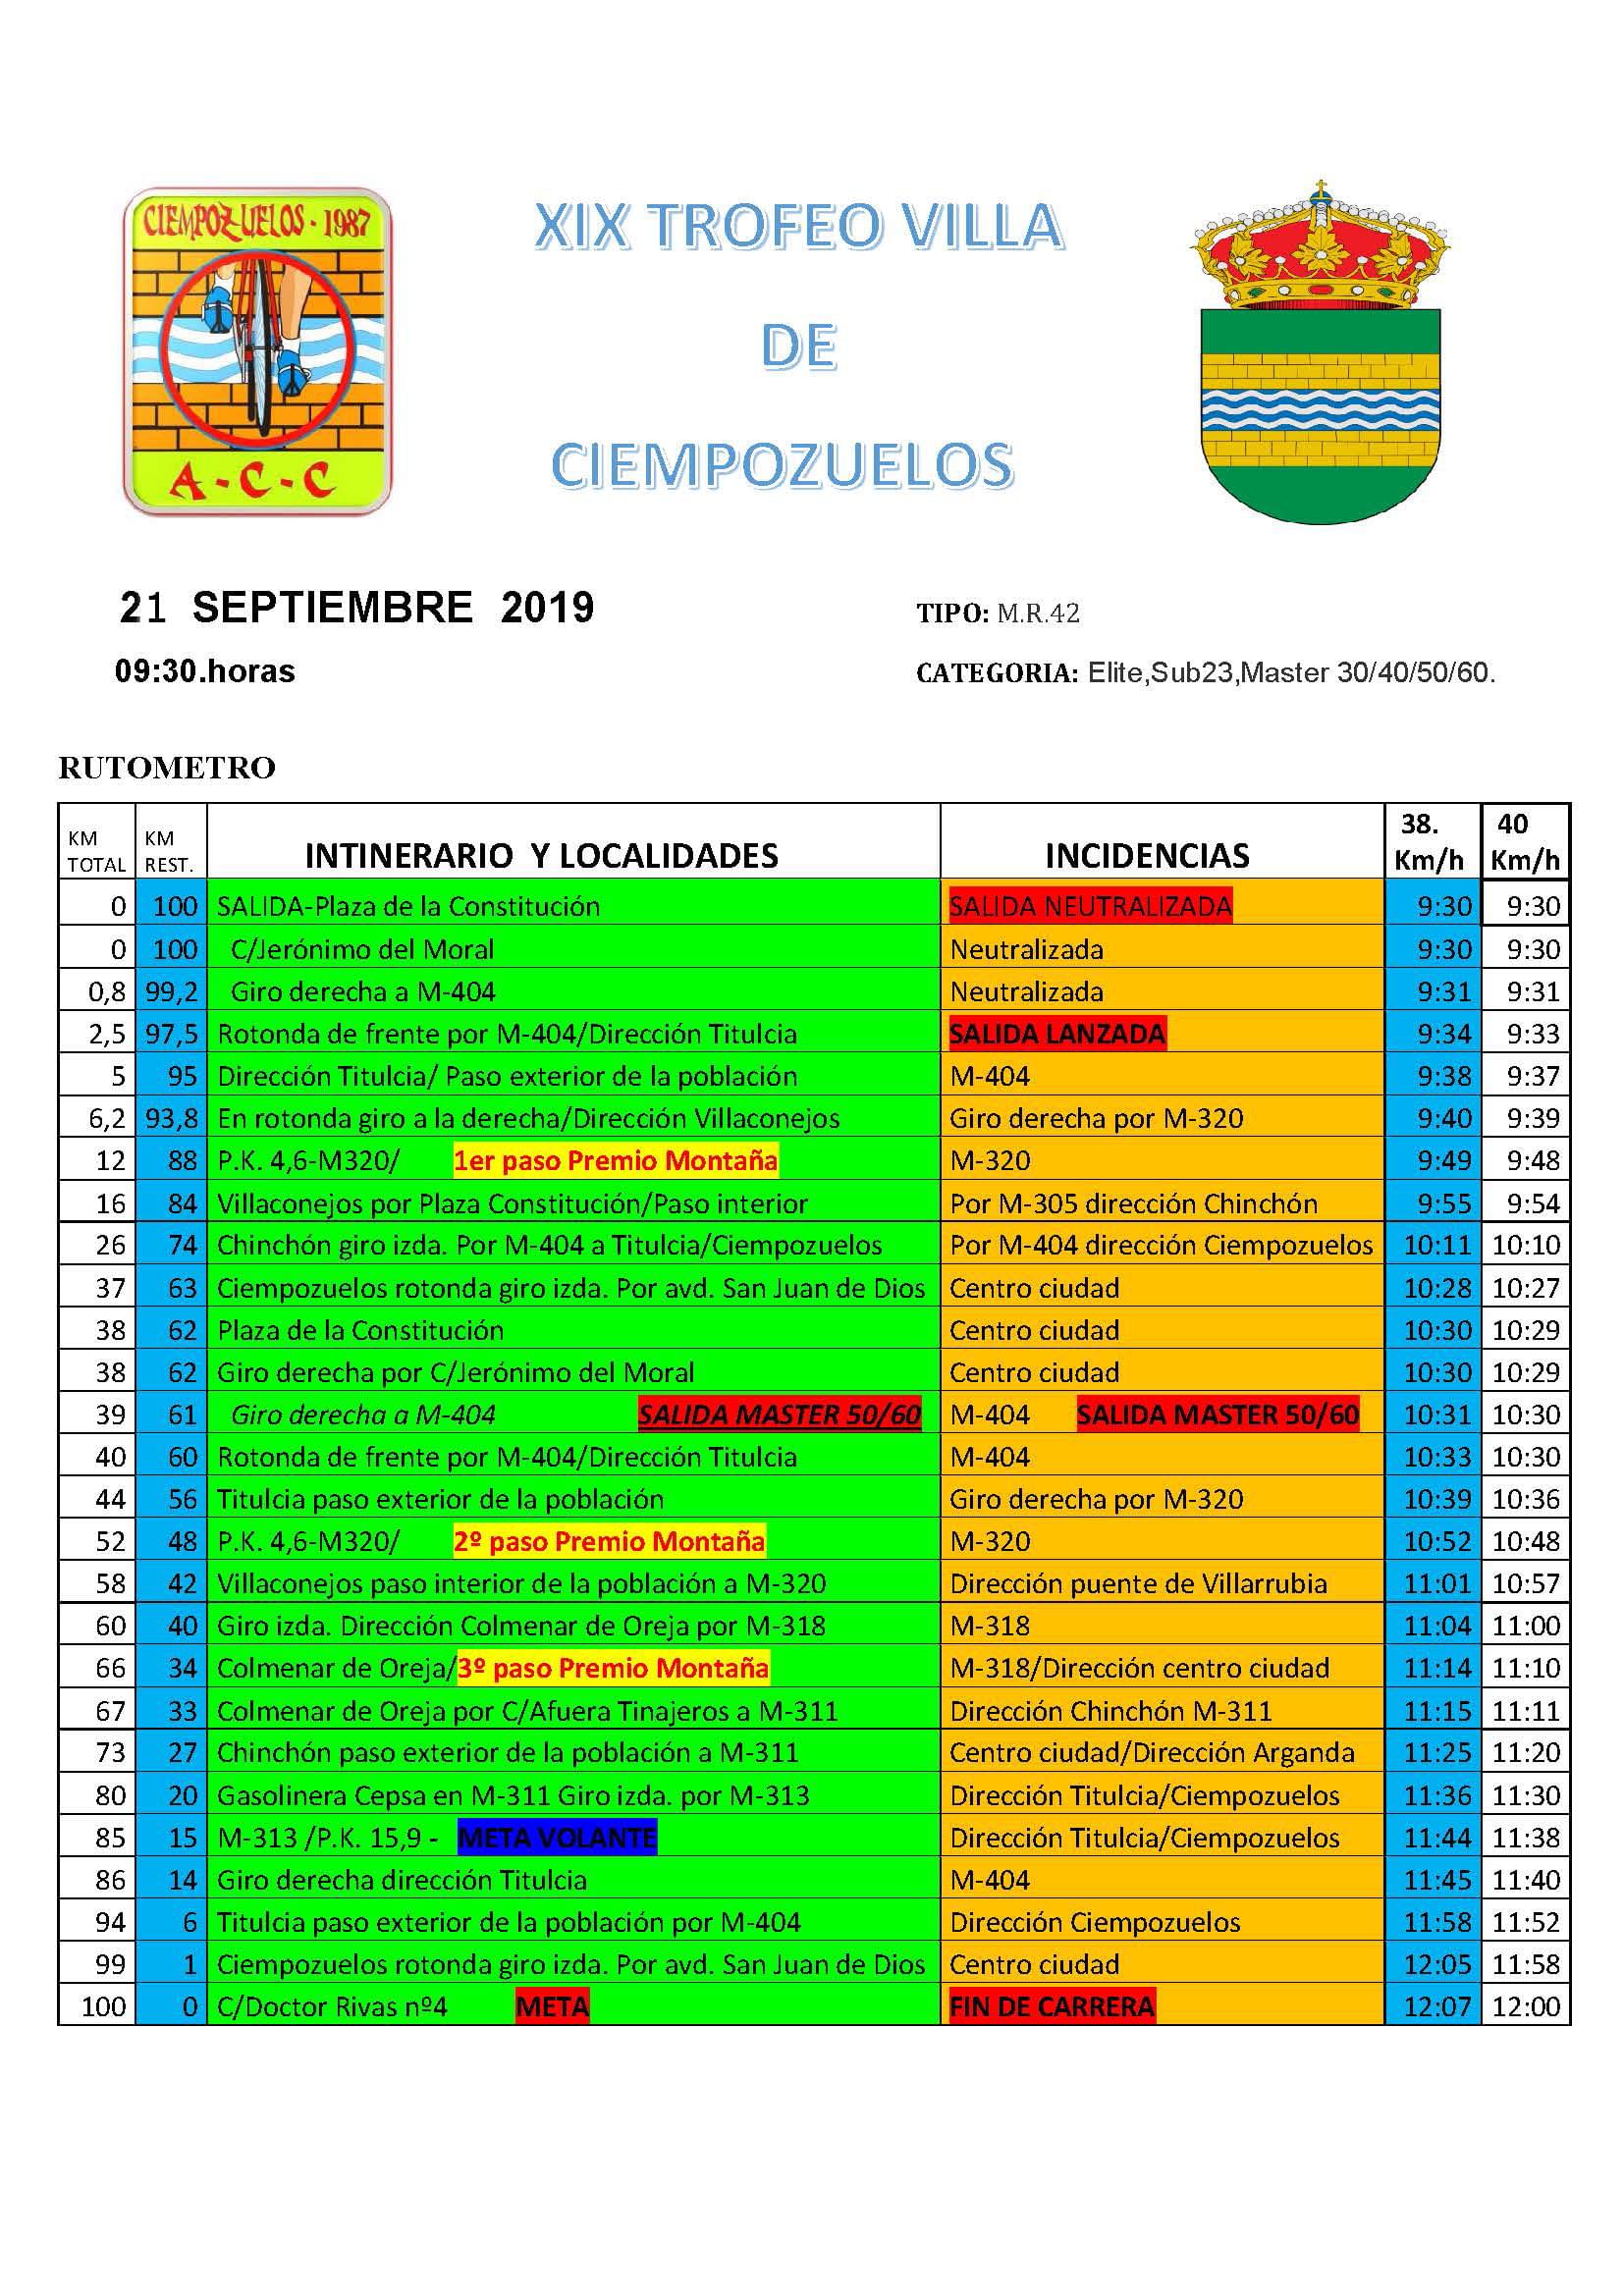 Cierre del calendario máster y elite-sub 23 con el XIX Trofeo Villa de Ciempozuelos